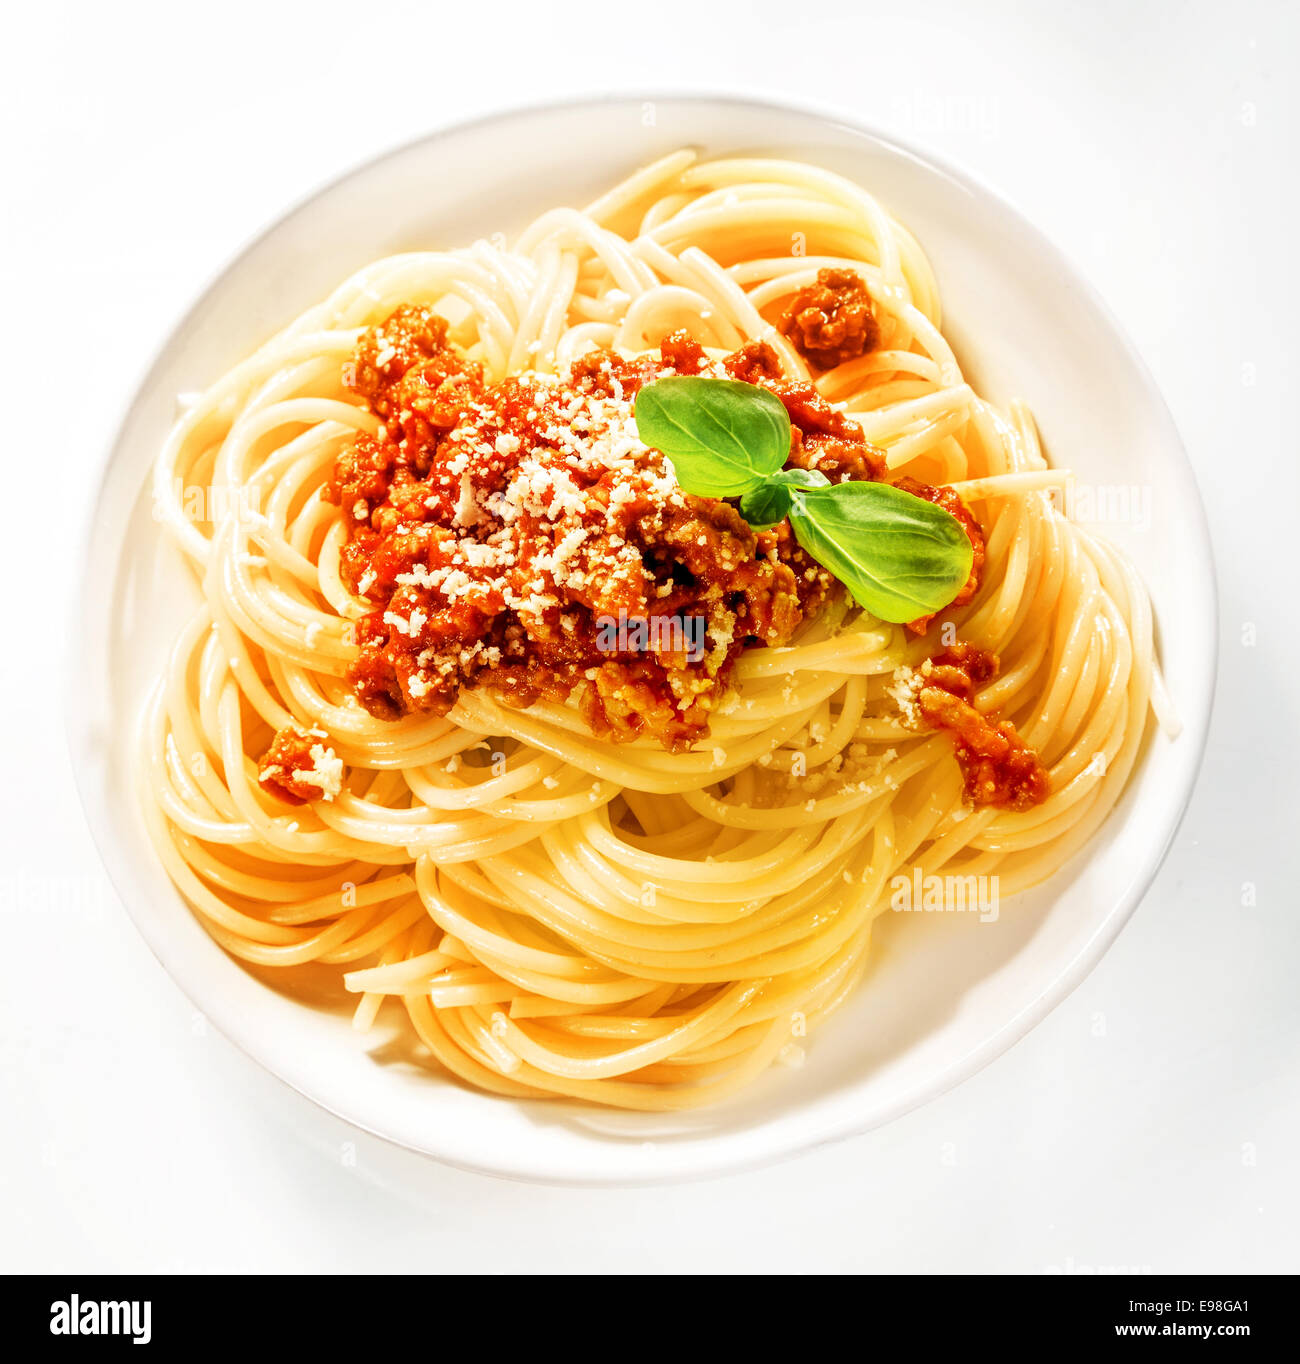 Sirviendo de italiano espaguetis con carne y salsa de tomate espolvoreada con queso parmesano rallado y adornado con hojas de albahaca fresca, vista desde arriba Foto de stock